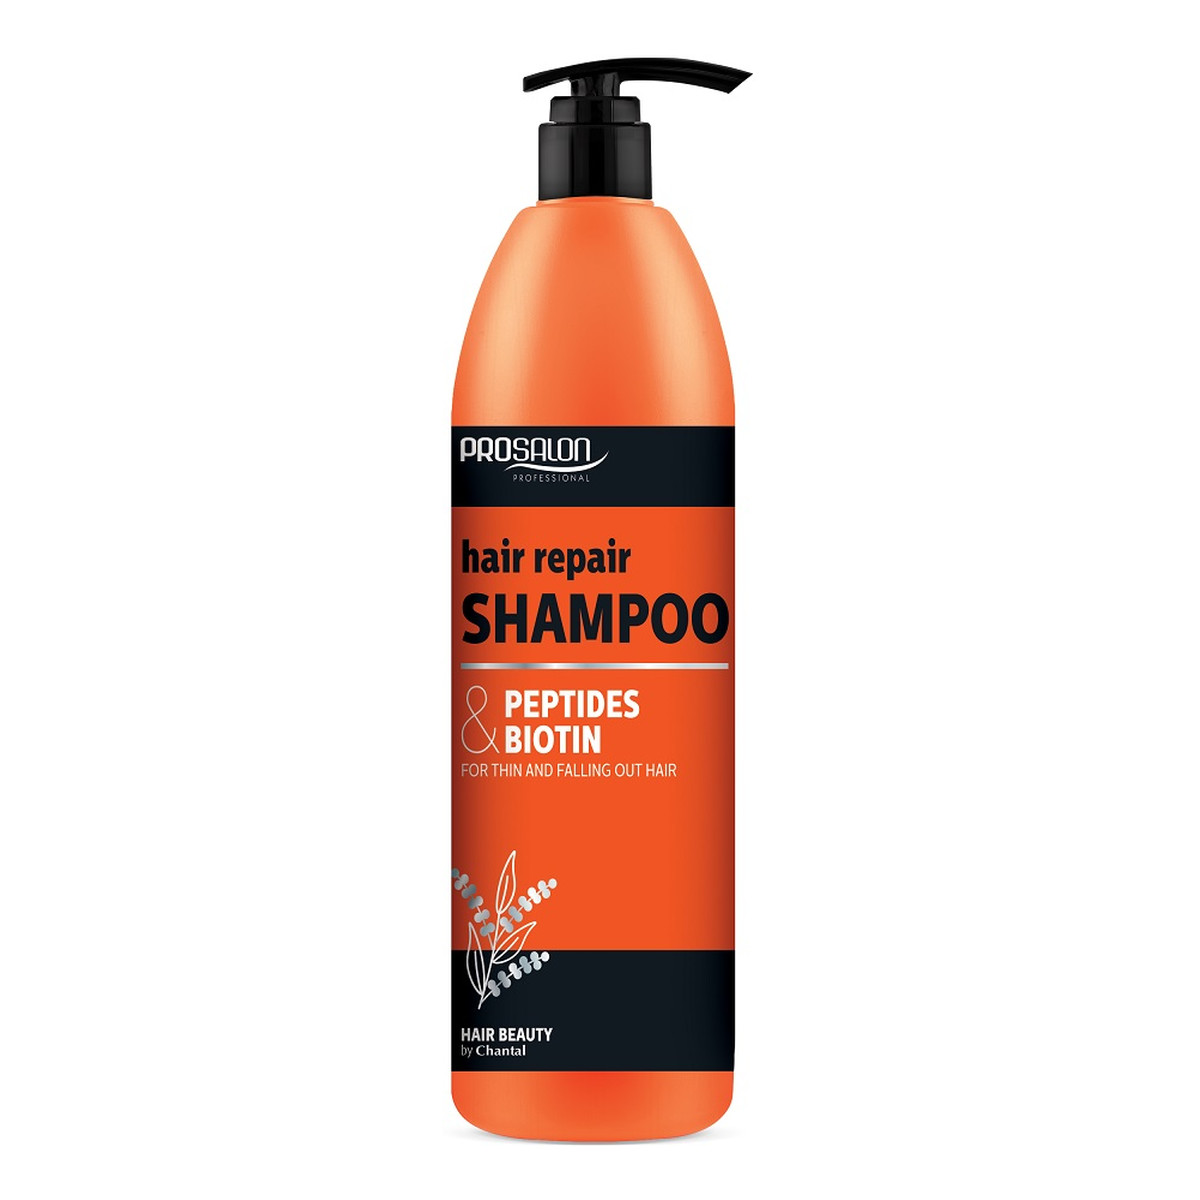 Chantal Profesional Prosalon Hair Repair Shampoo szampon naprawczy do włosów z peptydami i biotyną 1000ml